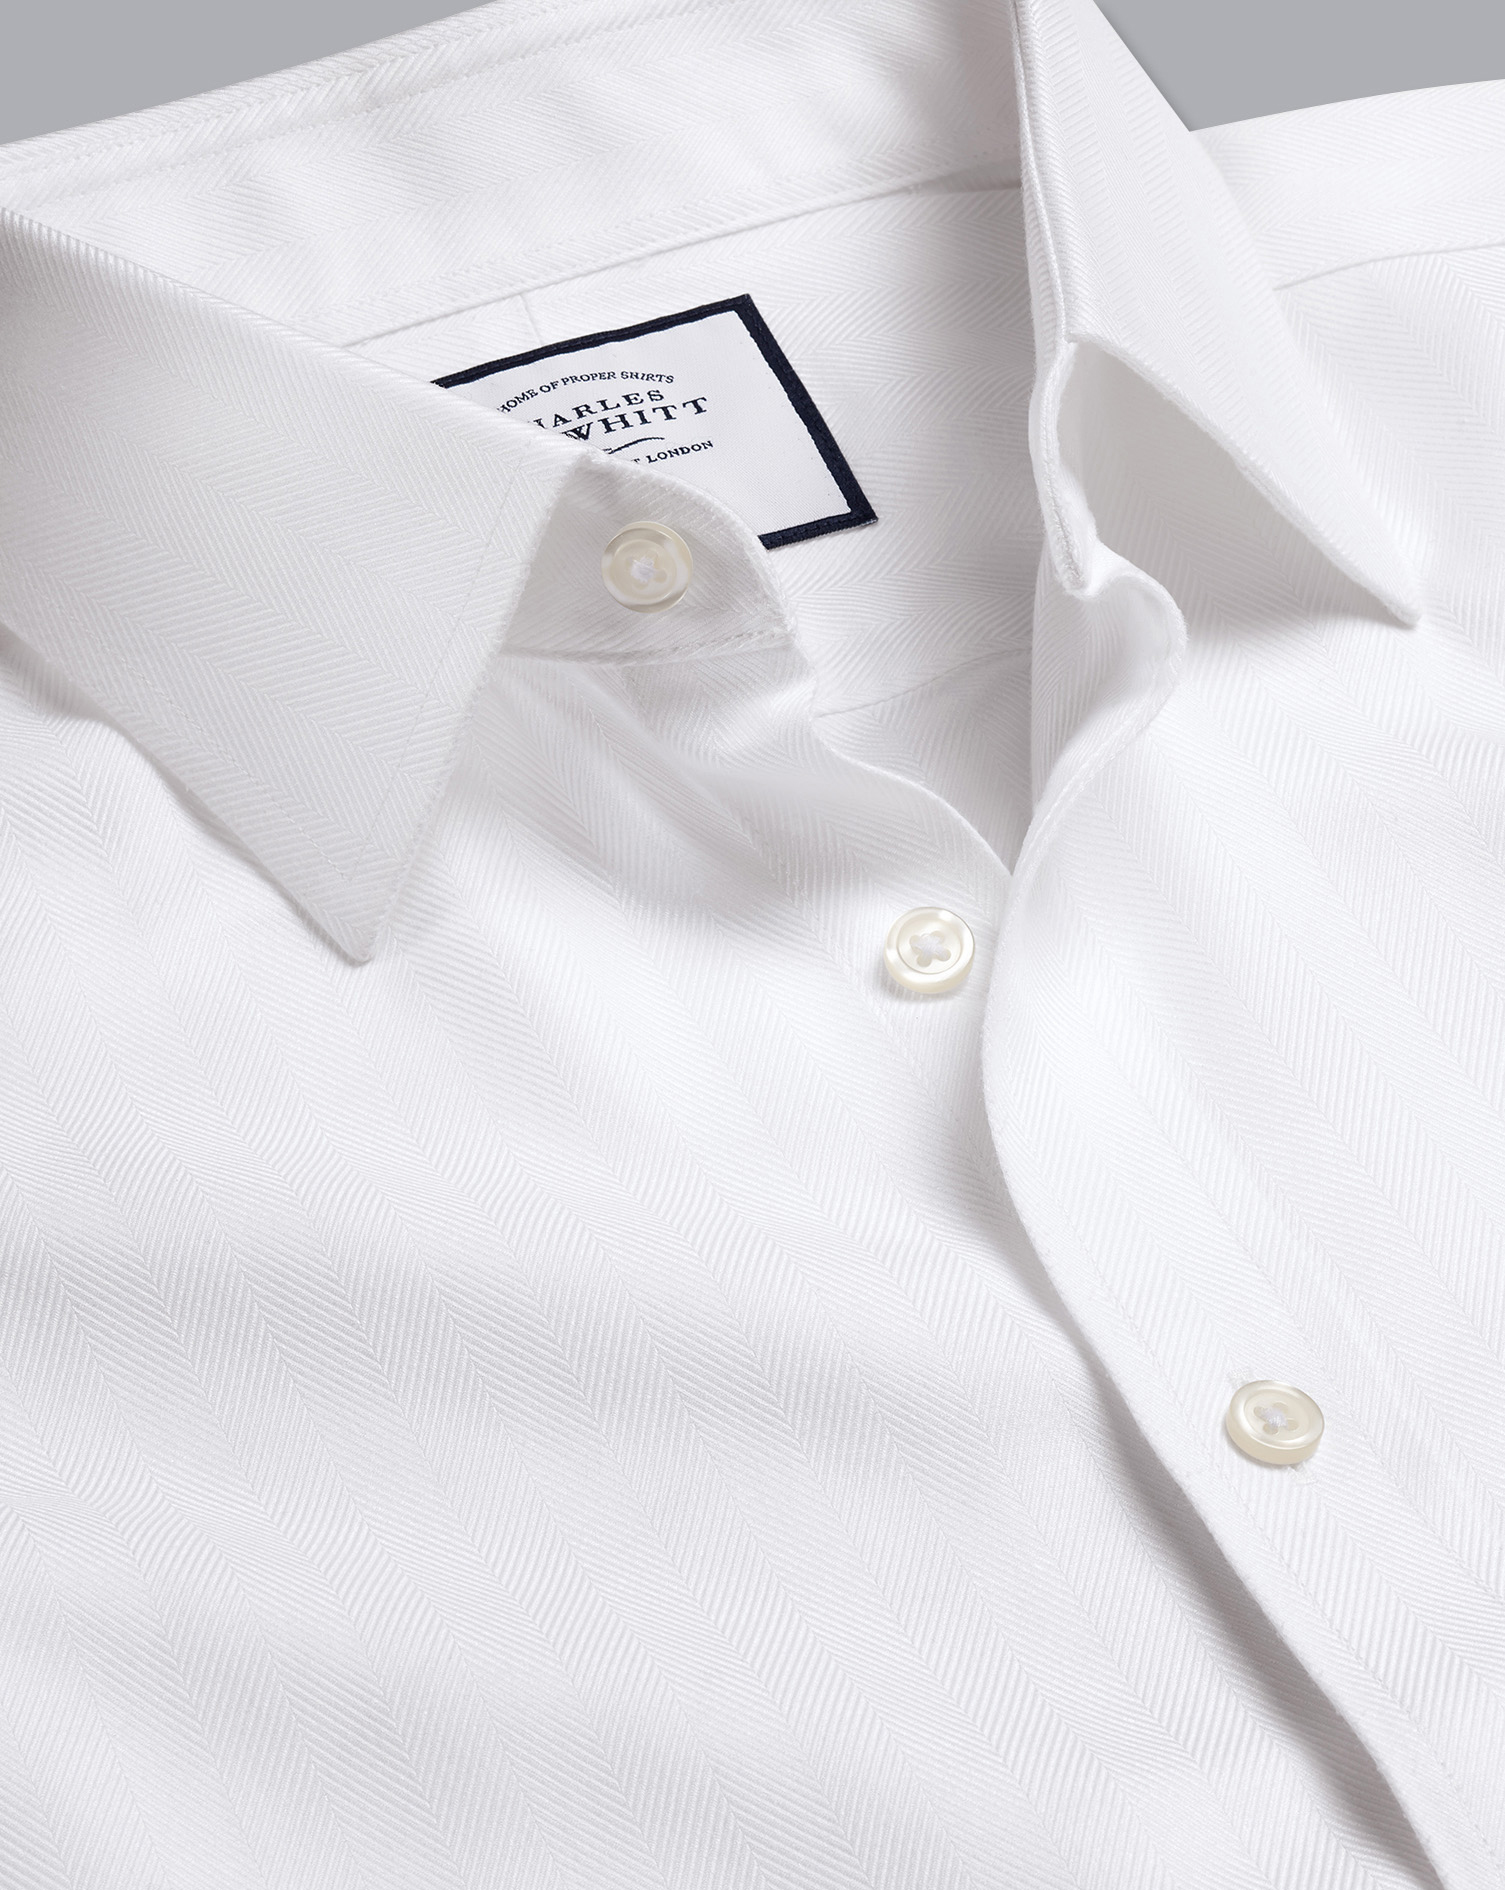 Men's Charles Tyrwhitt Non-Iron Herringbone Dress Shirt - White French Cuff Size Medium Cotton
